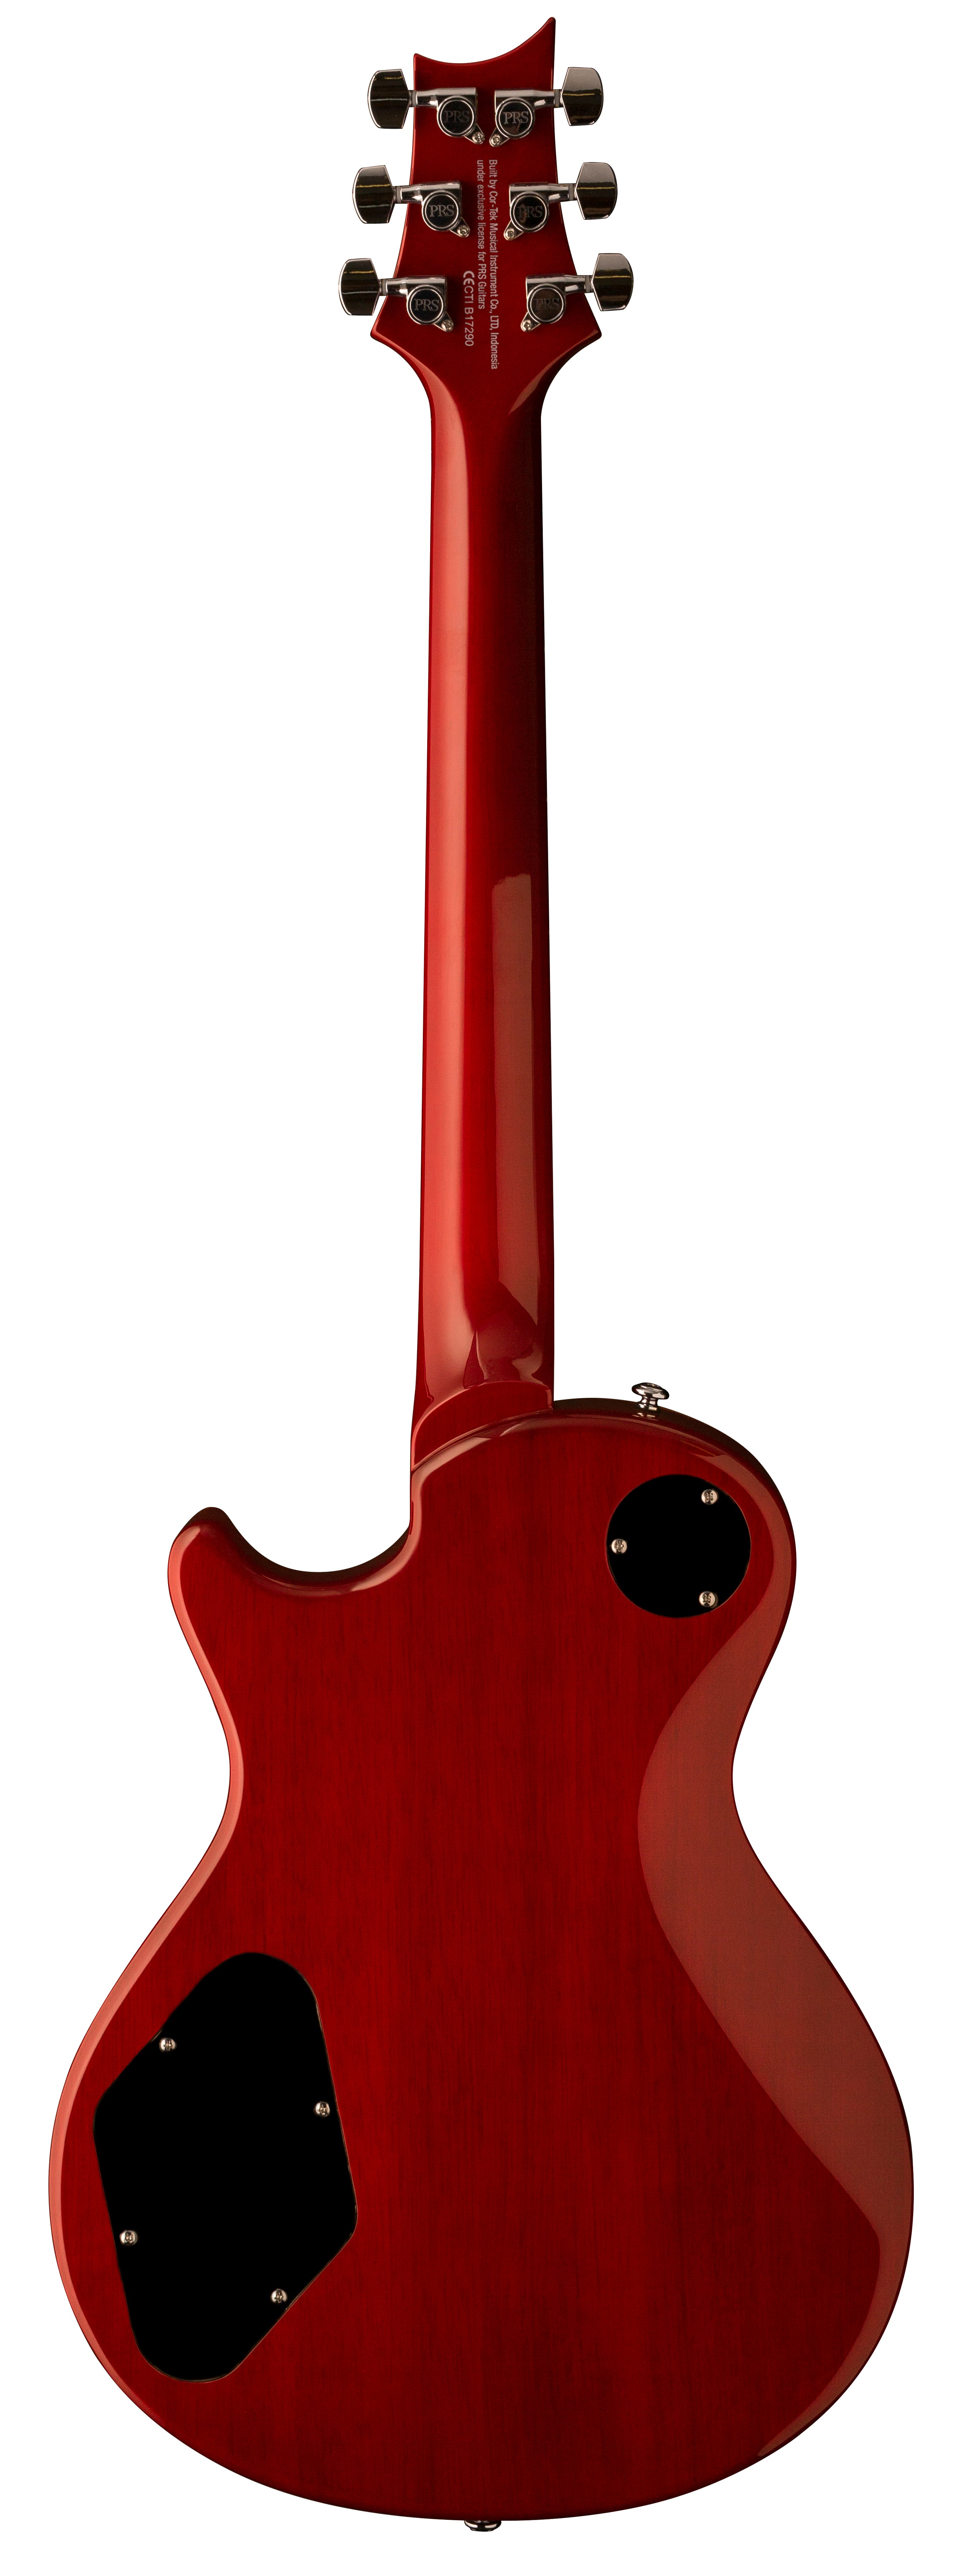 PRS SE Series 245 Electric Guitar (Vintage Sunburst)